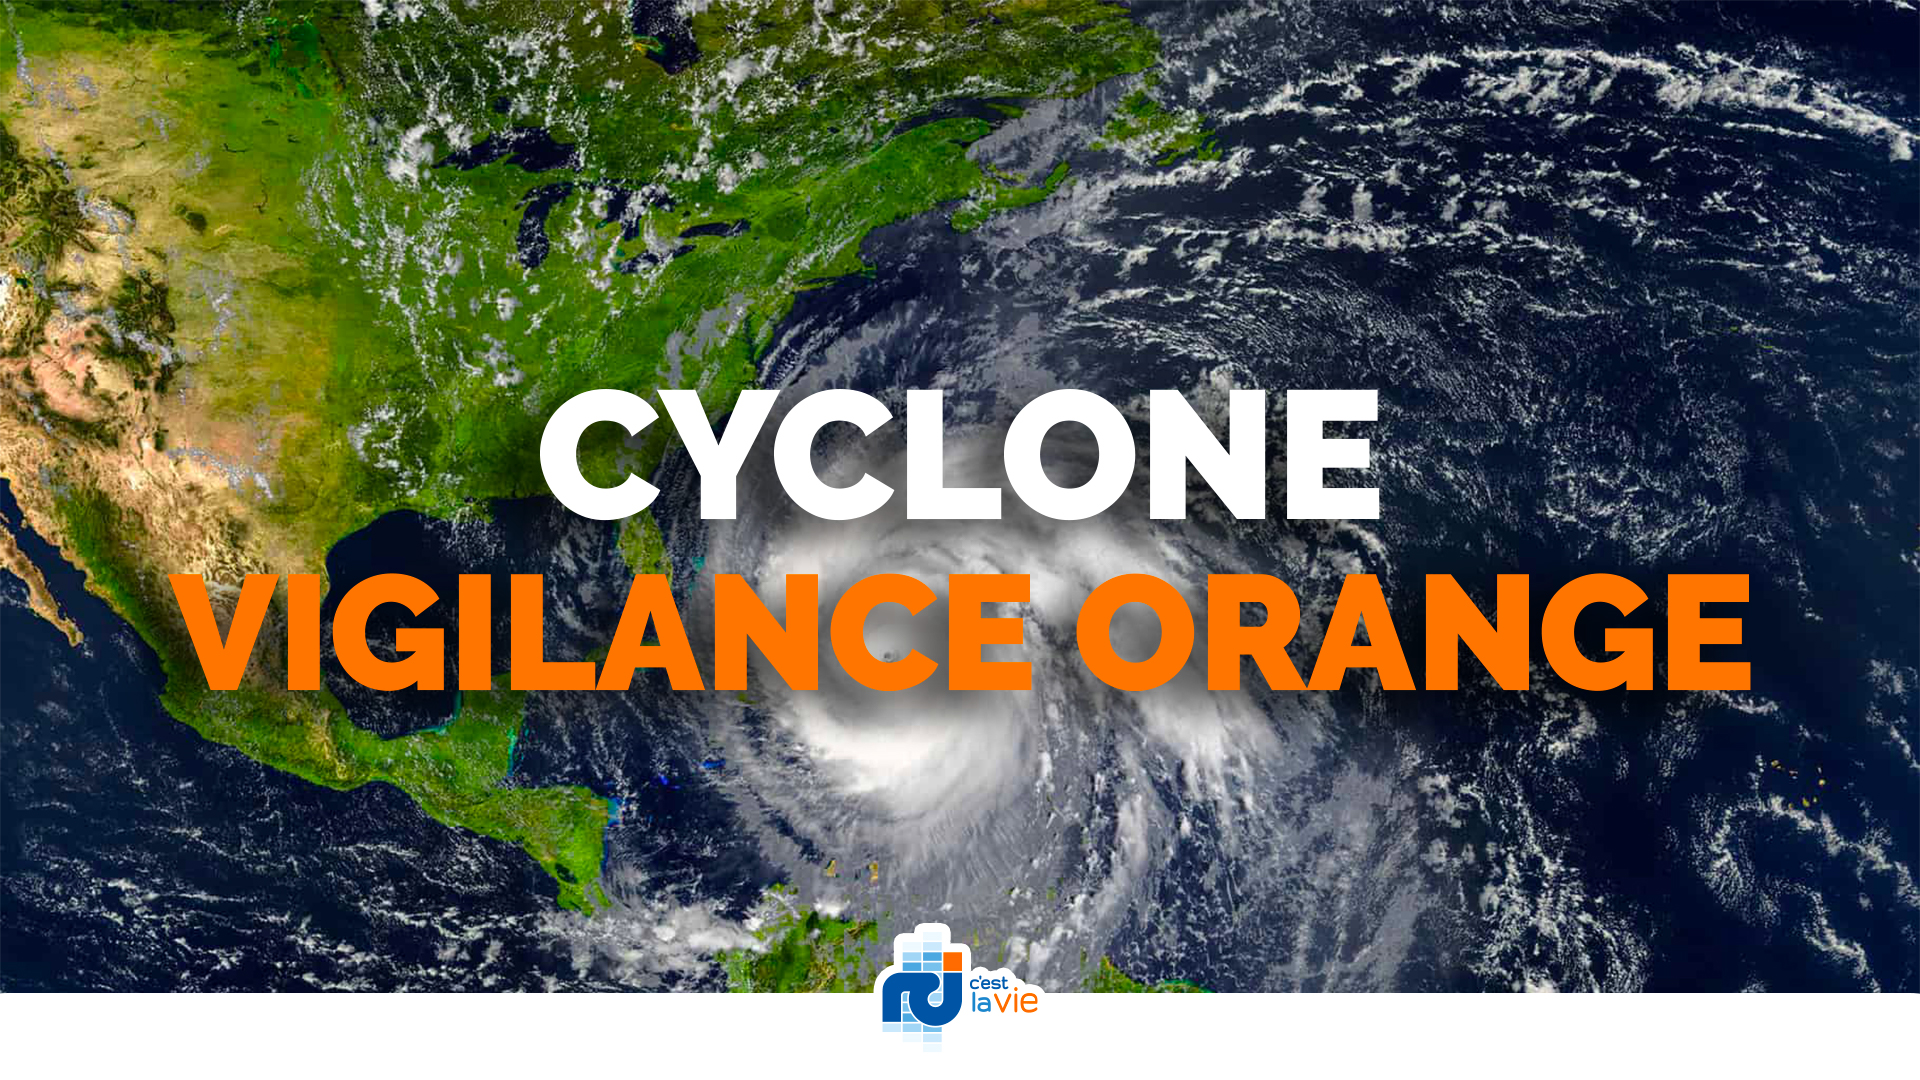     La Martinique en vigilance orange cyclone à l'approche de la tempête Bret

